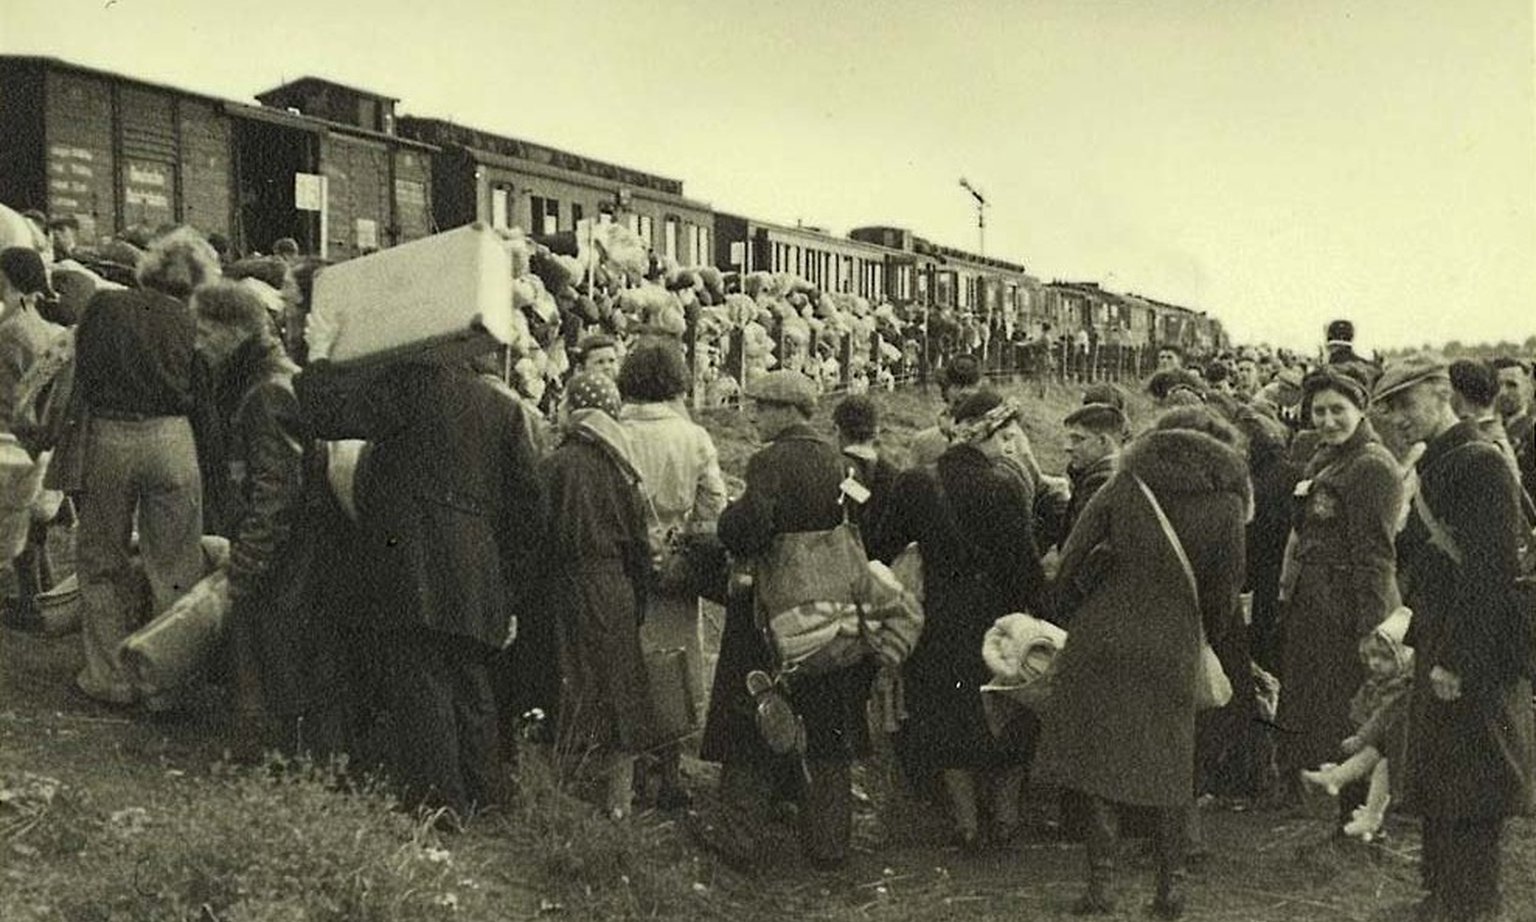 Los judíos holandeses abordan el tren en el cual son deportados a Auschwitz (Rudolf Breslauer / Wikimedia Commons)